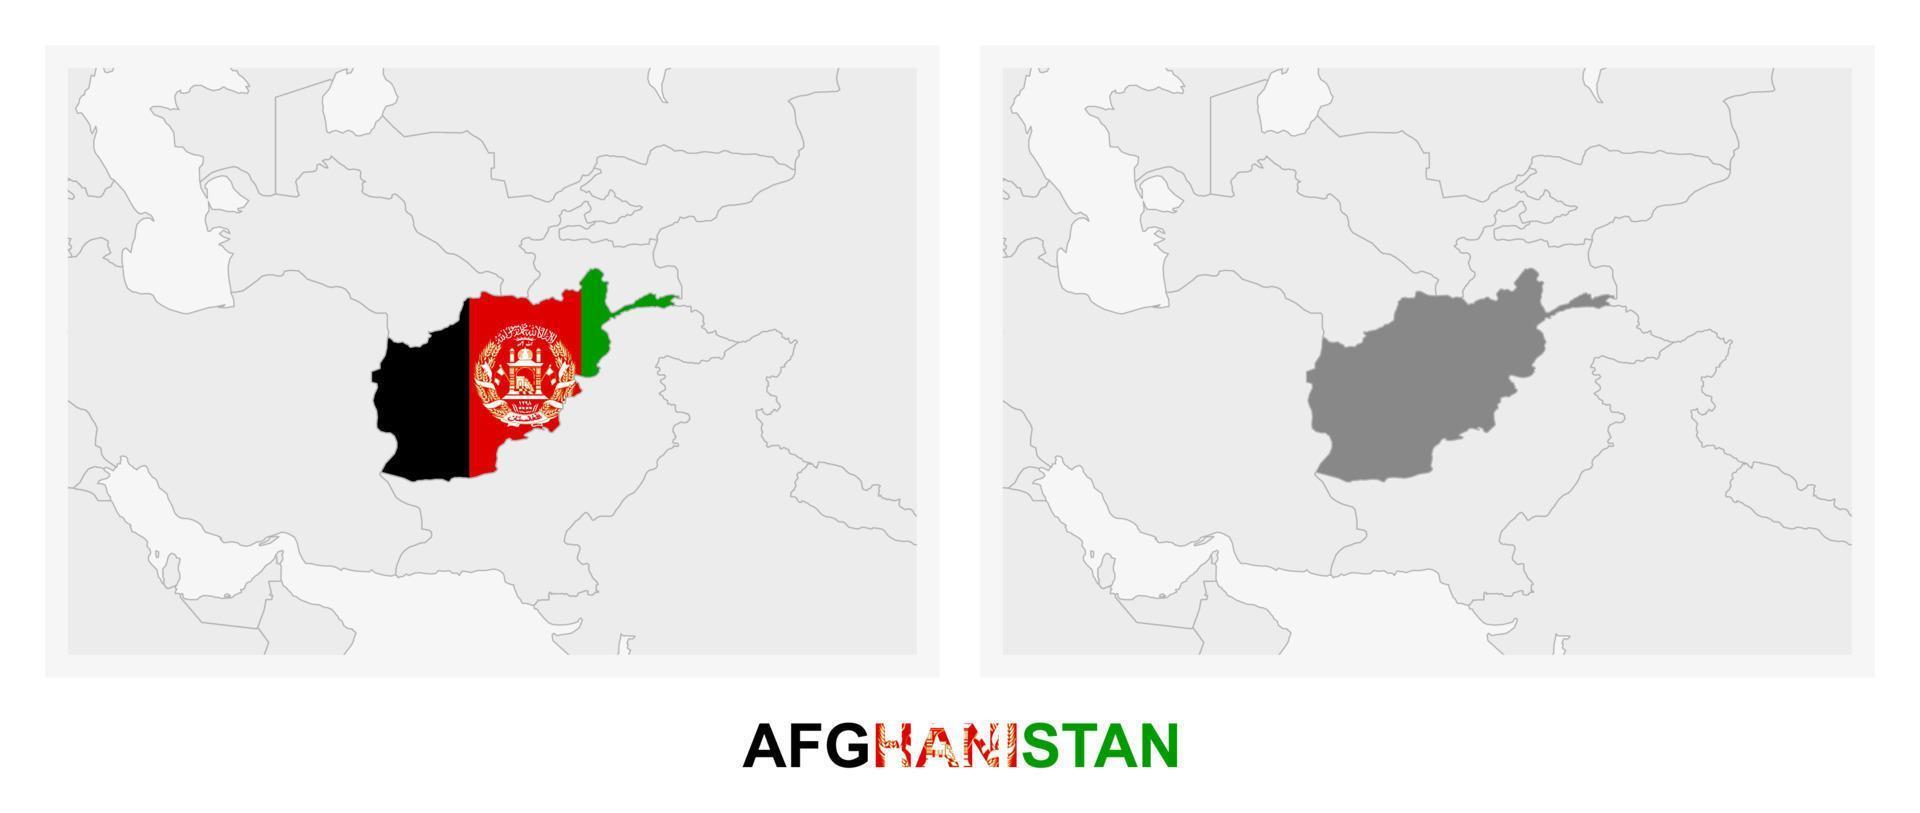 deux versions de la carte de l'afghanistan, avec le drapeau de l'afghanistan et surlignées en gris foncé. vecteur